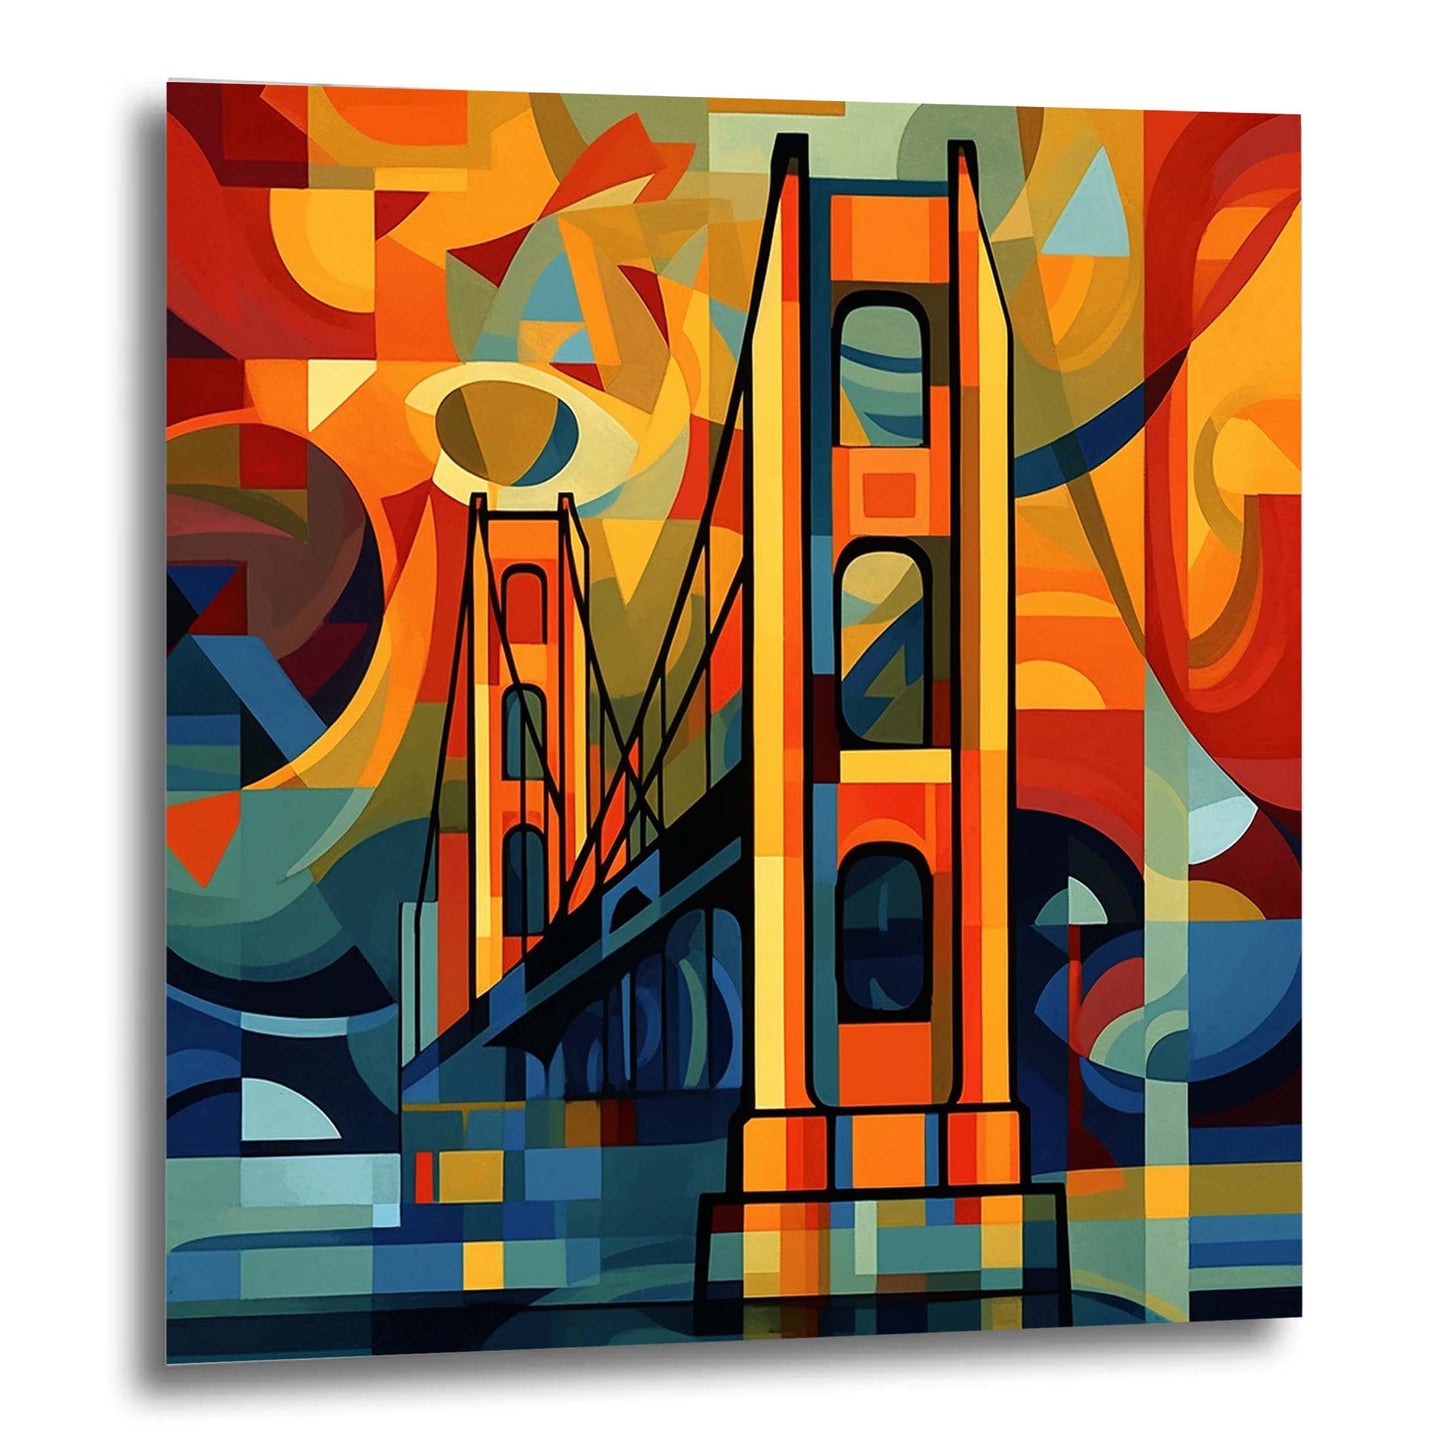 Golden Gate Bridge de San Francisco - Peinture murale dans le style de l'expressionnisme